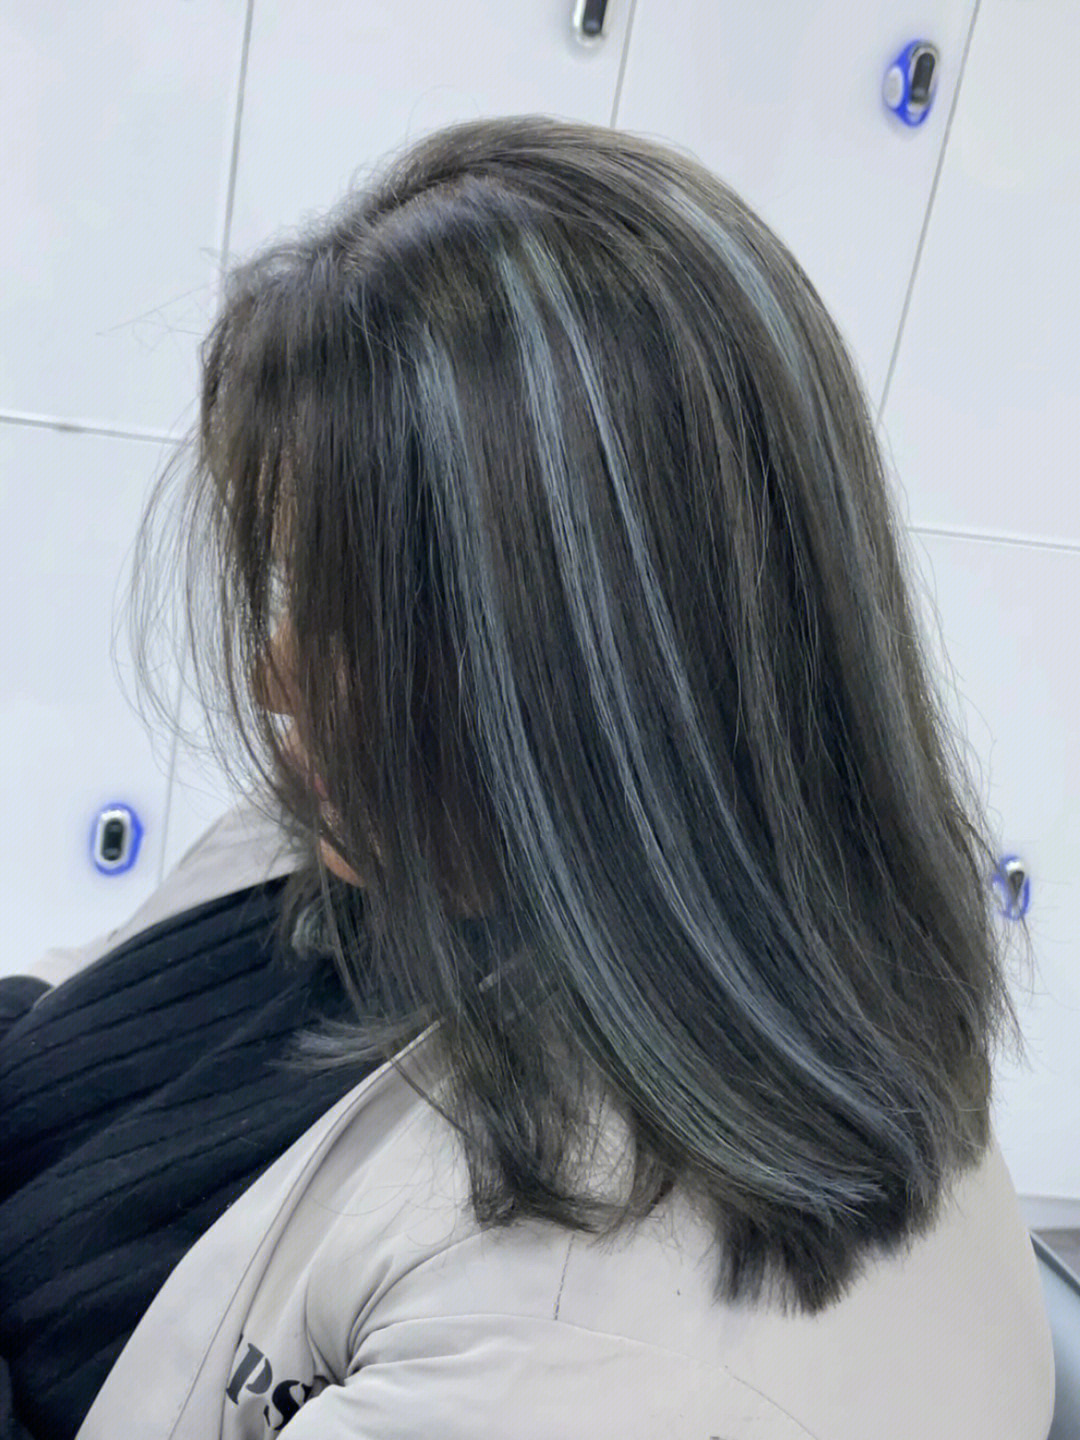 挑染头发褪色到八度底色:深灰挑染:蓝灰挑染掉色亚麻金  高级感首足